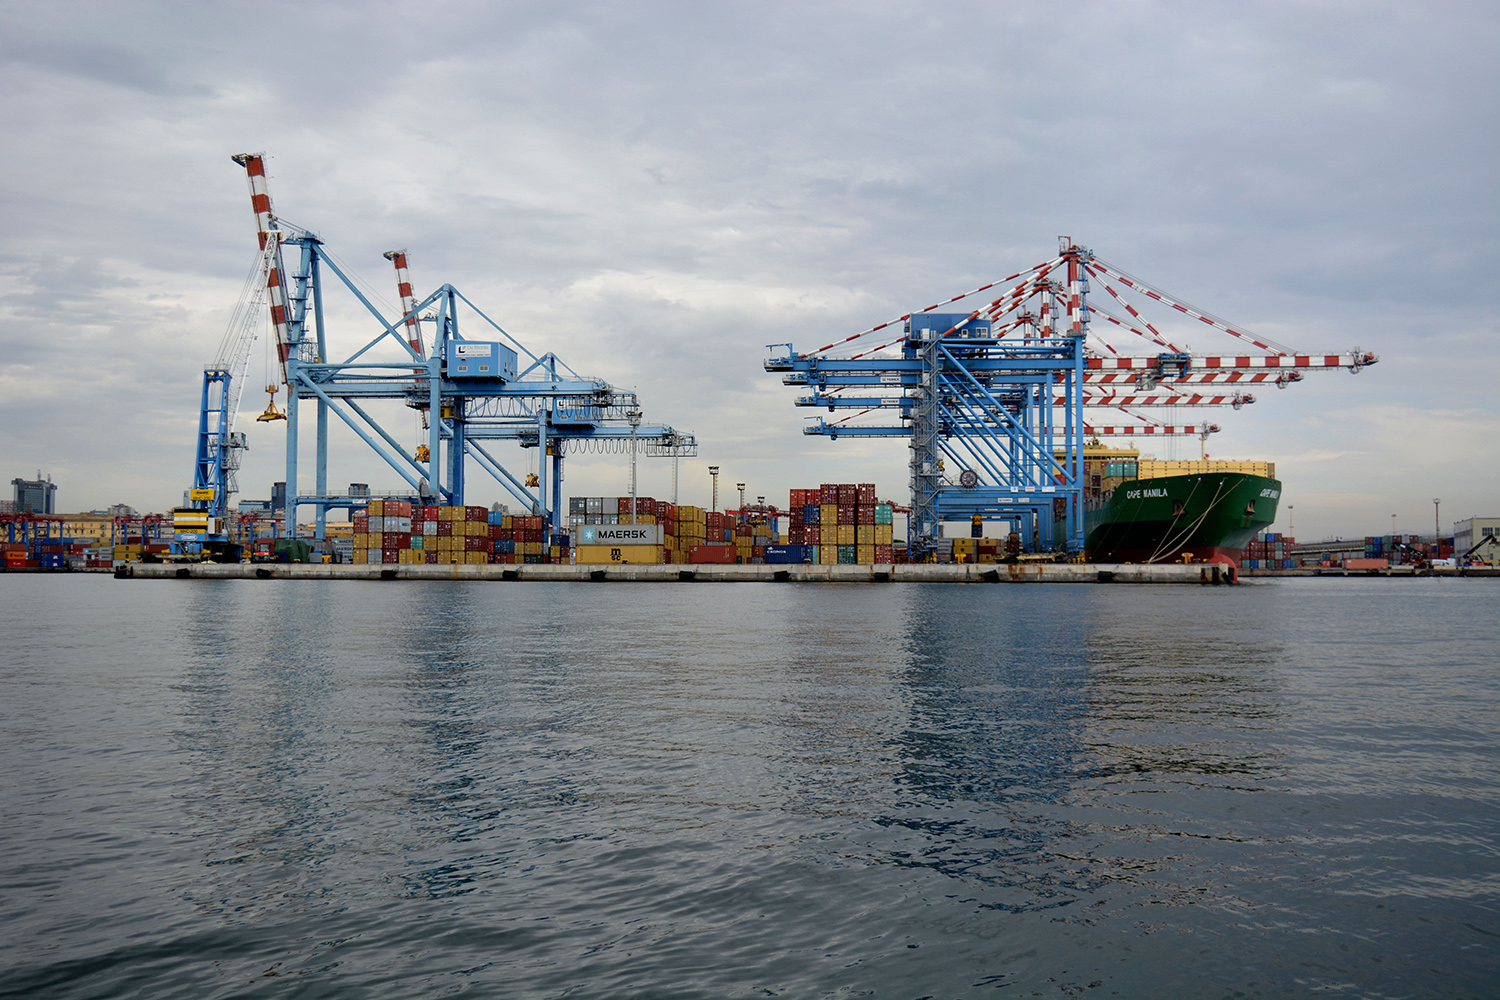  San Giovanni a Teduccio (Napoli), 2017. Porto industriale Napoli Est. Stoccaggio dei container e navi cargo. © Alice Tinozzi 